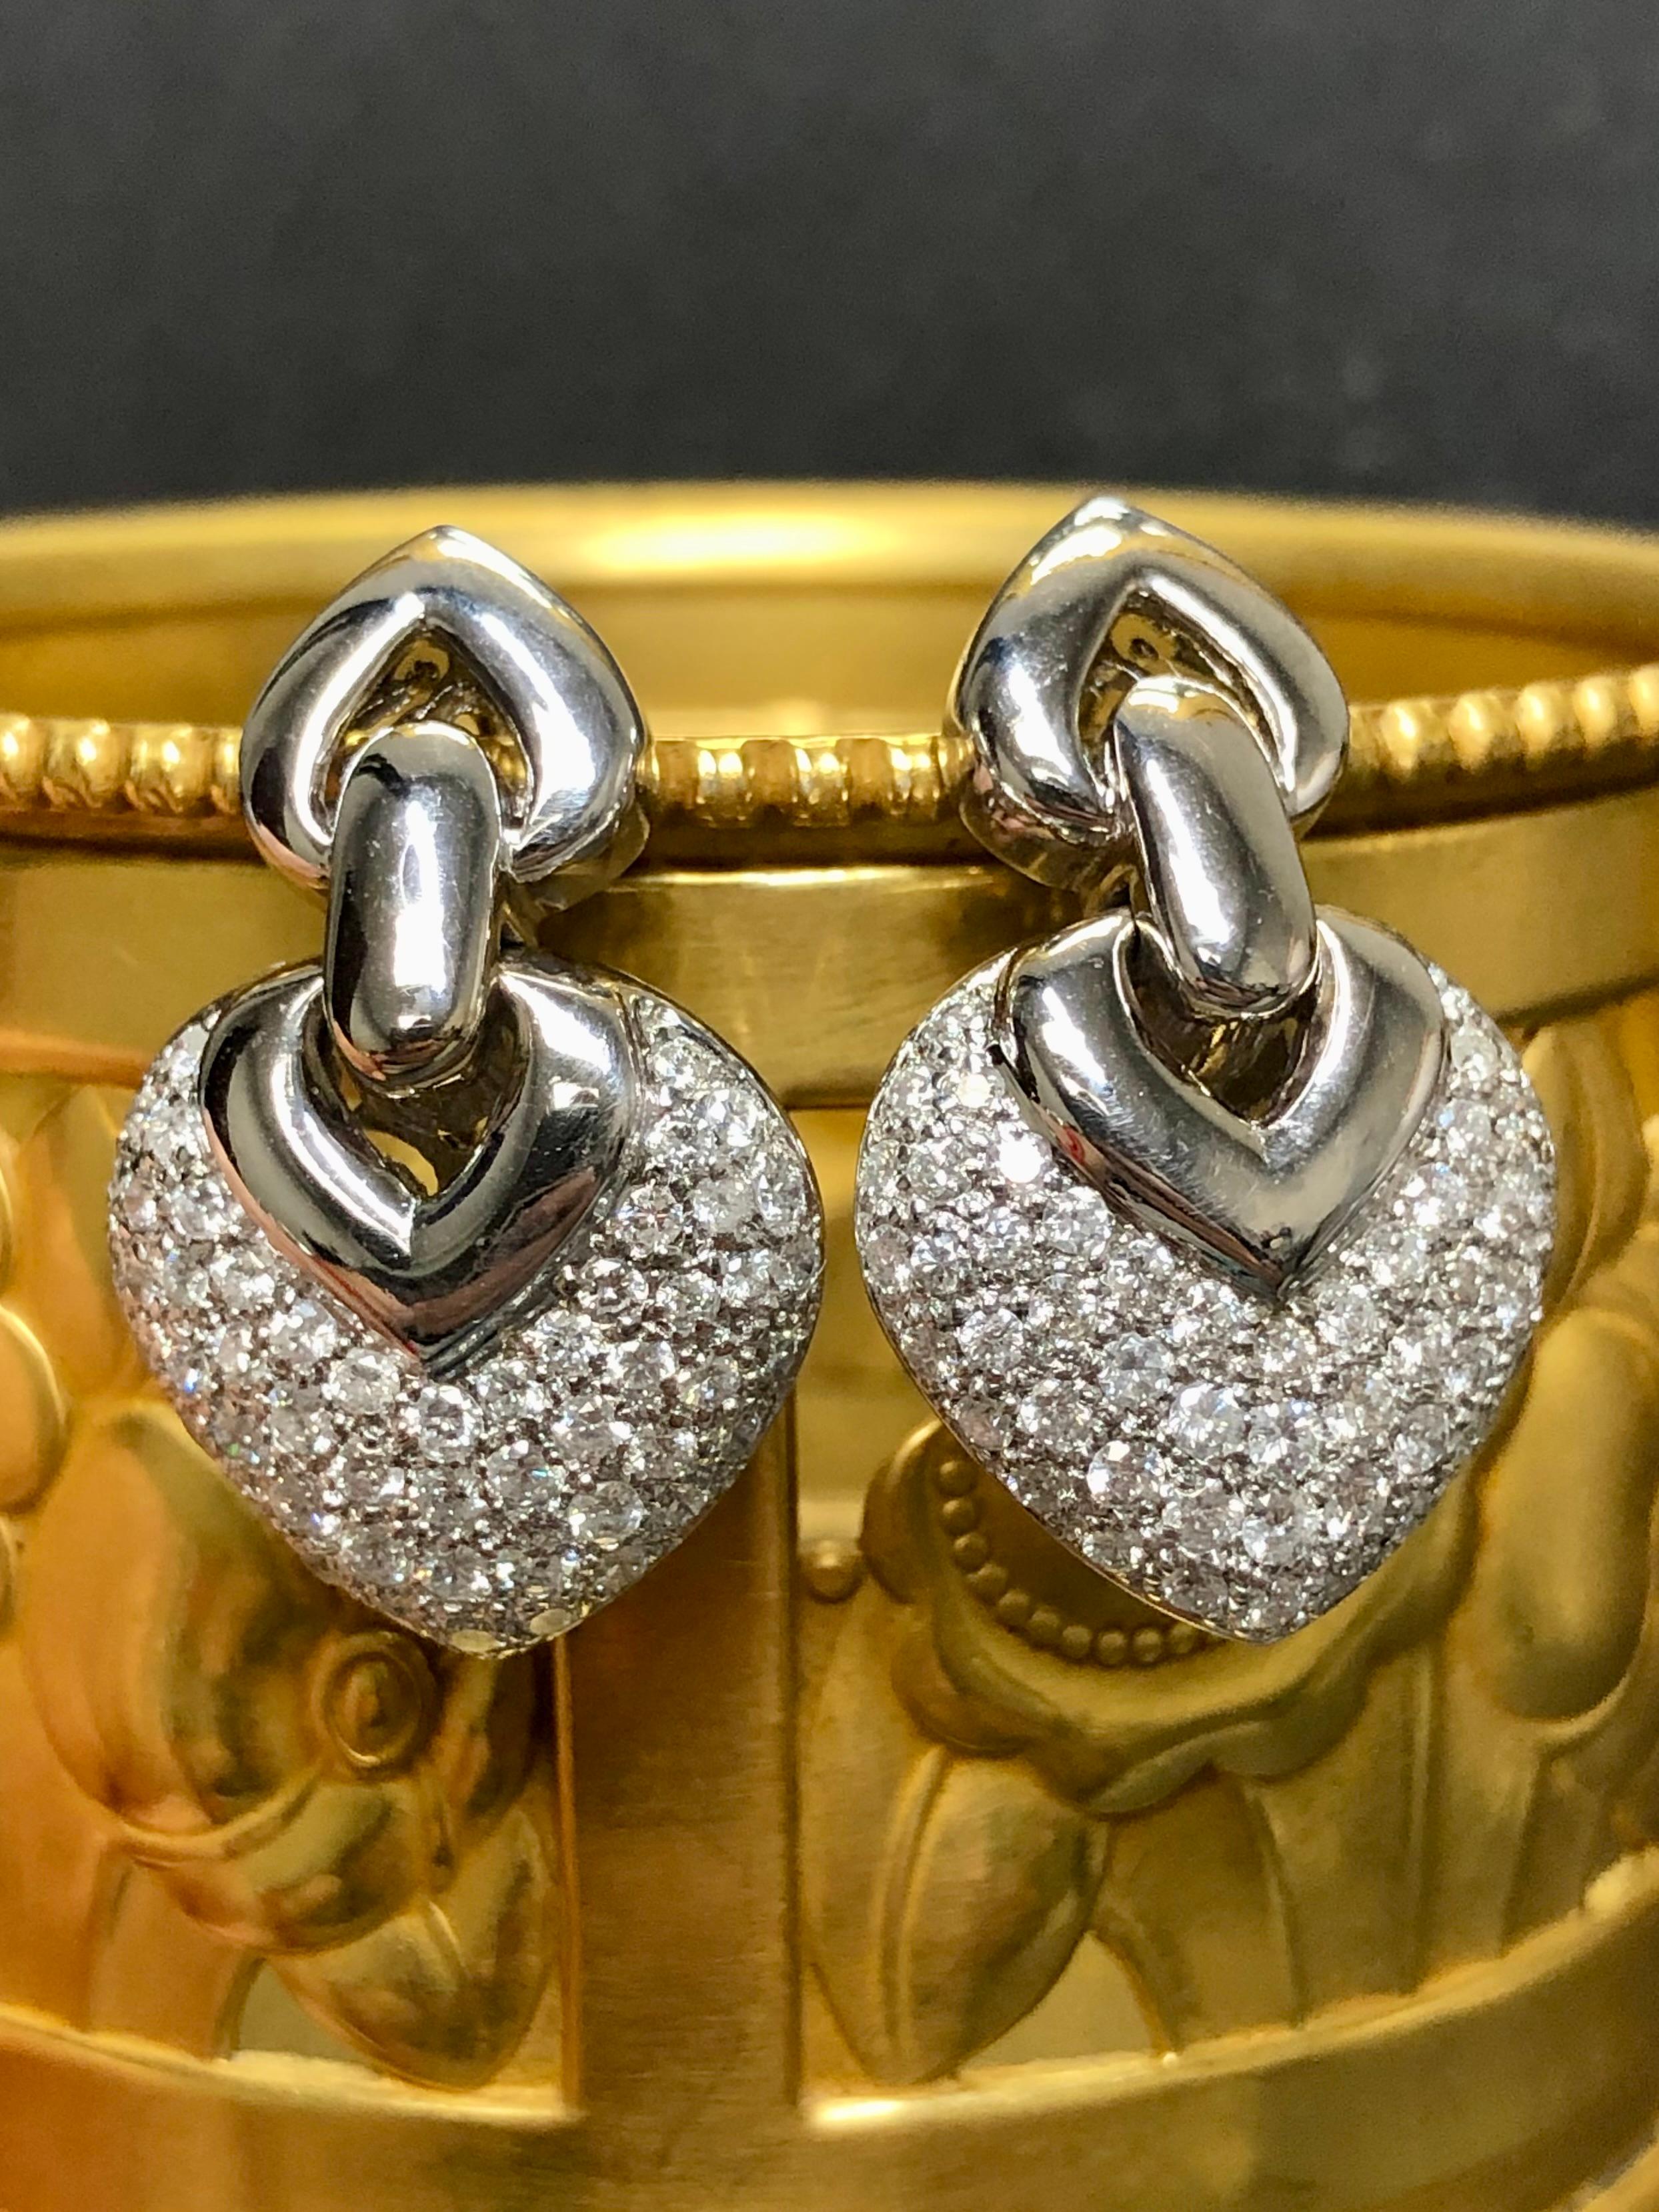 
Ein klassisches Paar Diamant-Ohrringe in 14K Weißgold mit ca. 3cttw in G-H Farbe Vs2-Si2 Klarheit runde Diamanten gesetzt getan. Pfosten mit Omega-Rücken.


Abmessungen/Gewicht:

Die Ohrringe messen 1,25